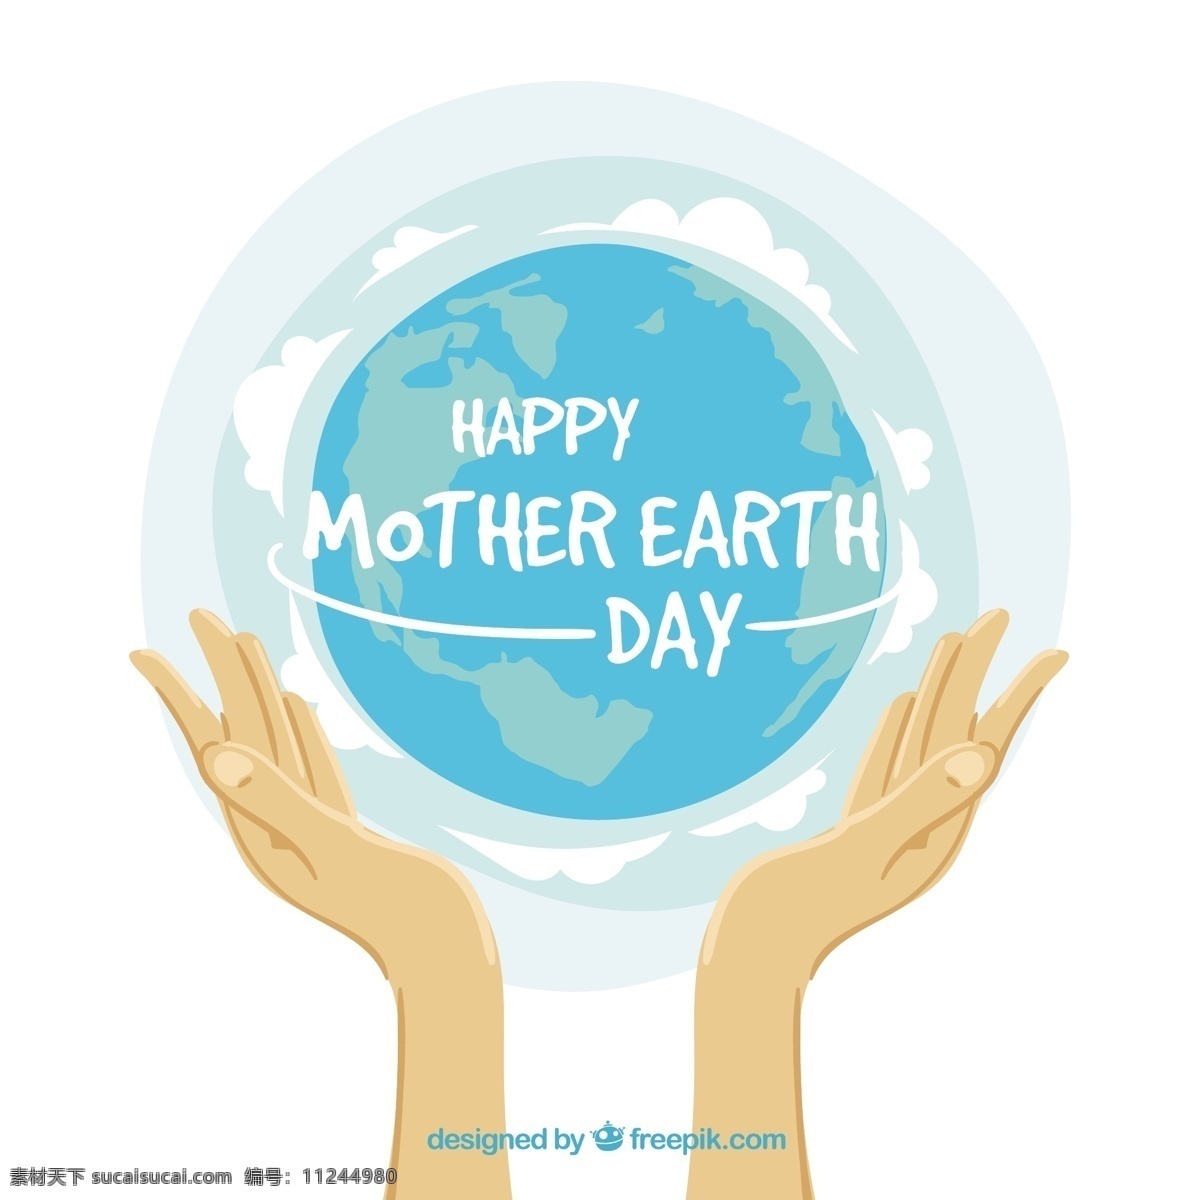 双手 世界 背景 手 地球 母亲 生态 有机 环境 发展 地面 生态友好 可持续 友好 植被 可持续发展 地球母亲